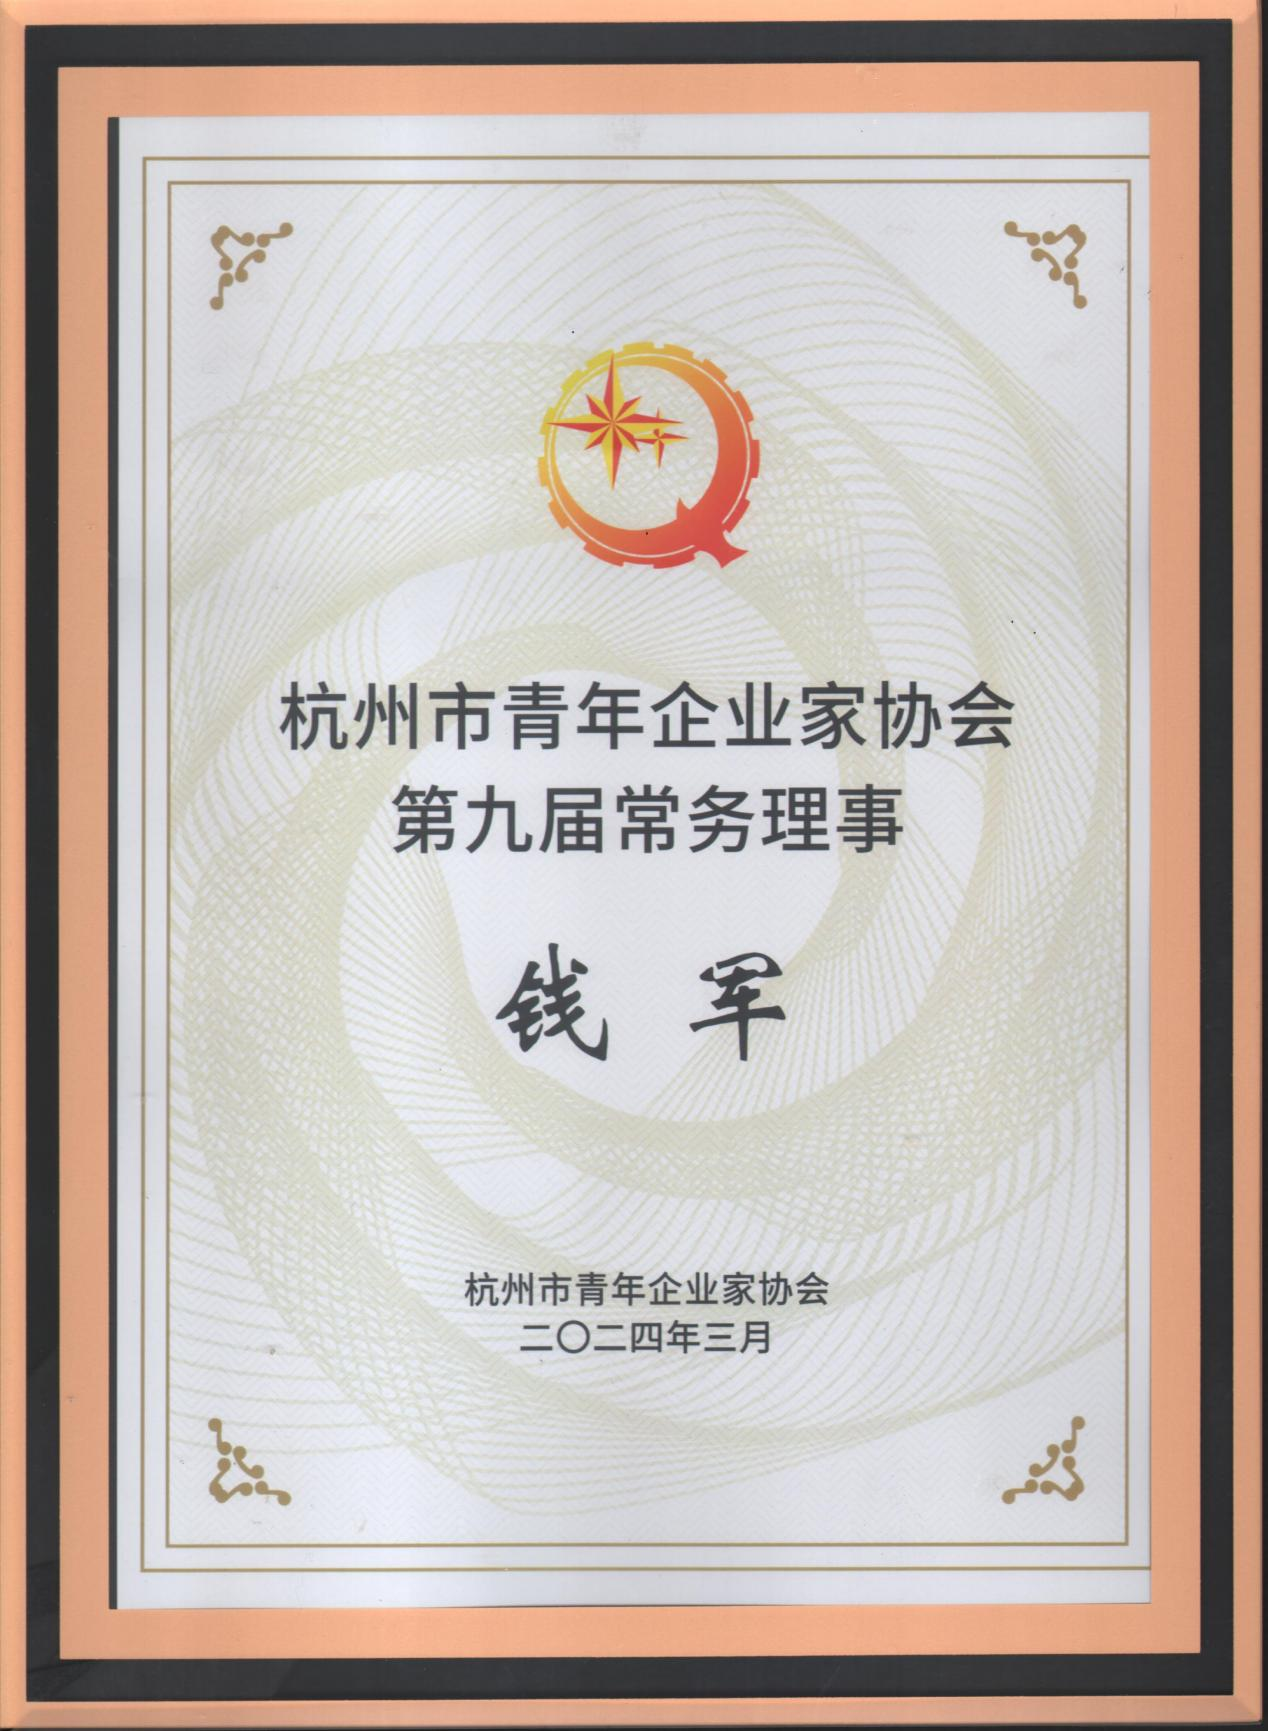 在线买球受邀参加杭州青年企业家协会九届二次常务理事会议